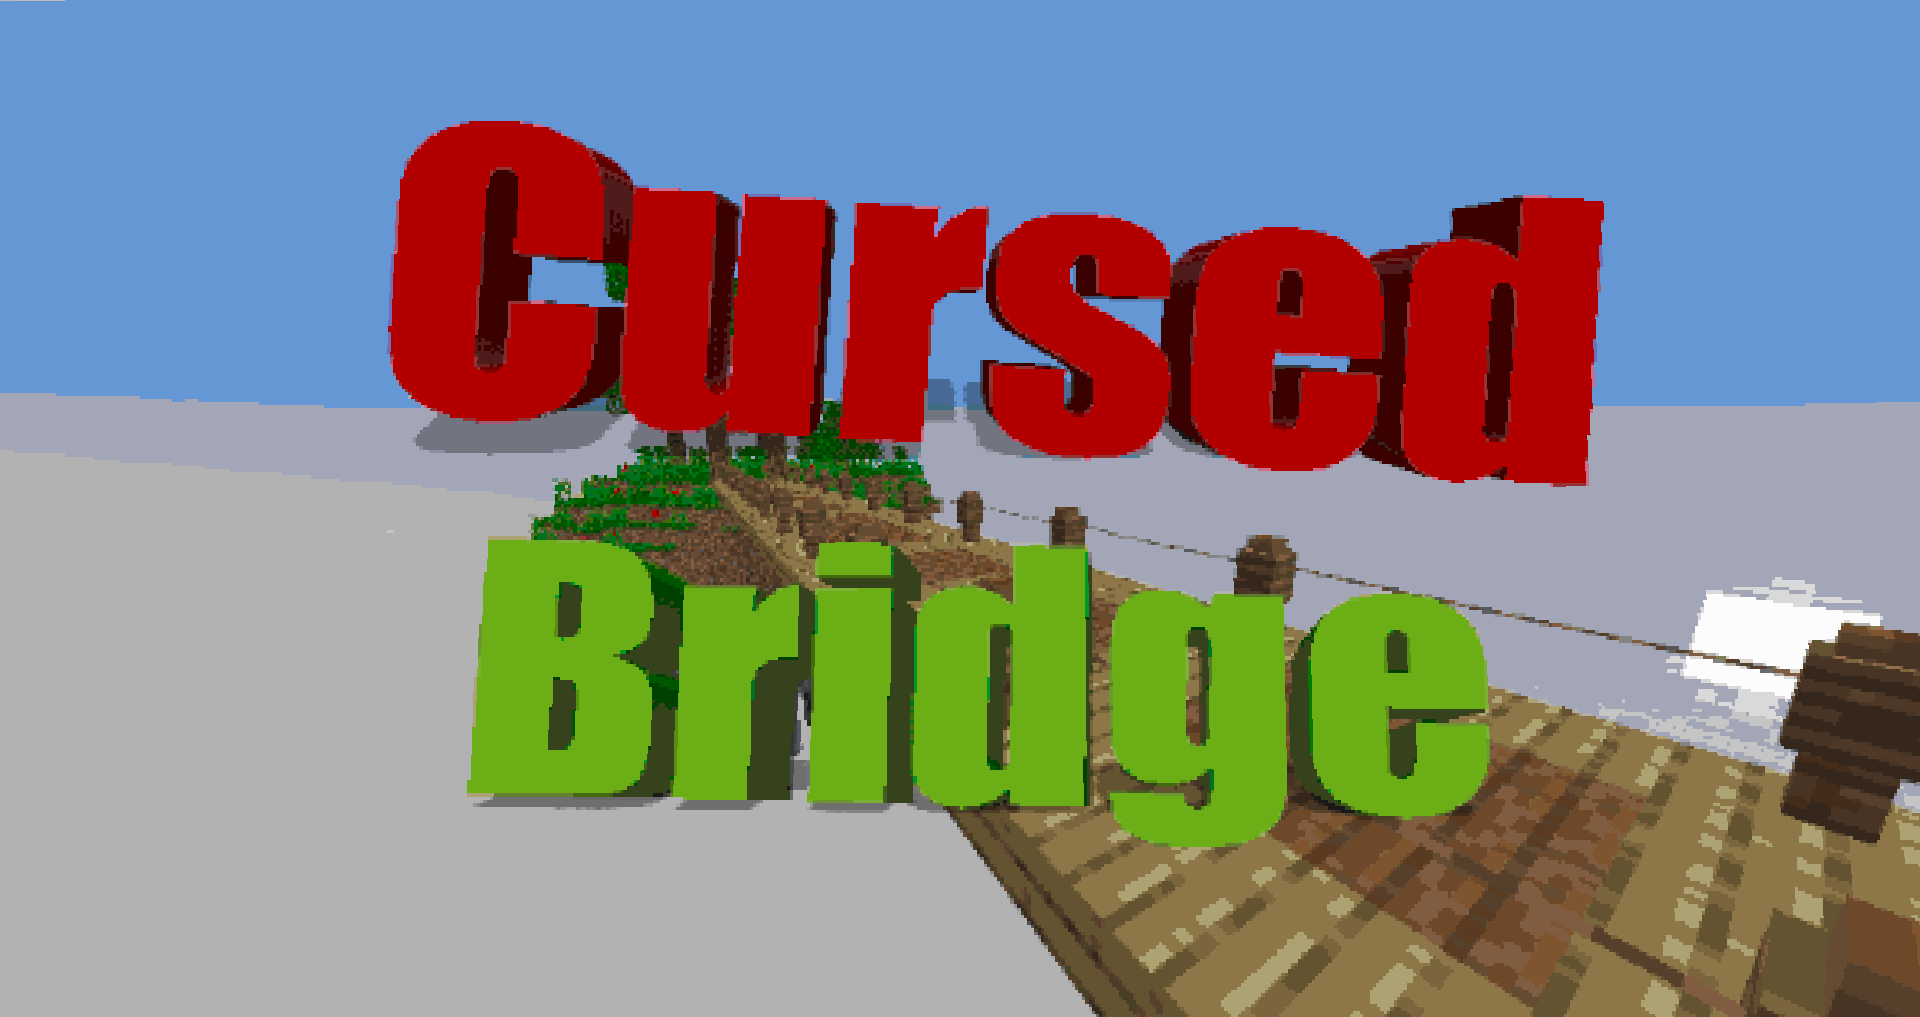 Download Cursed Bridge for Minecraft 1.16.4